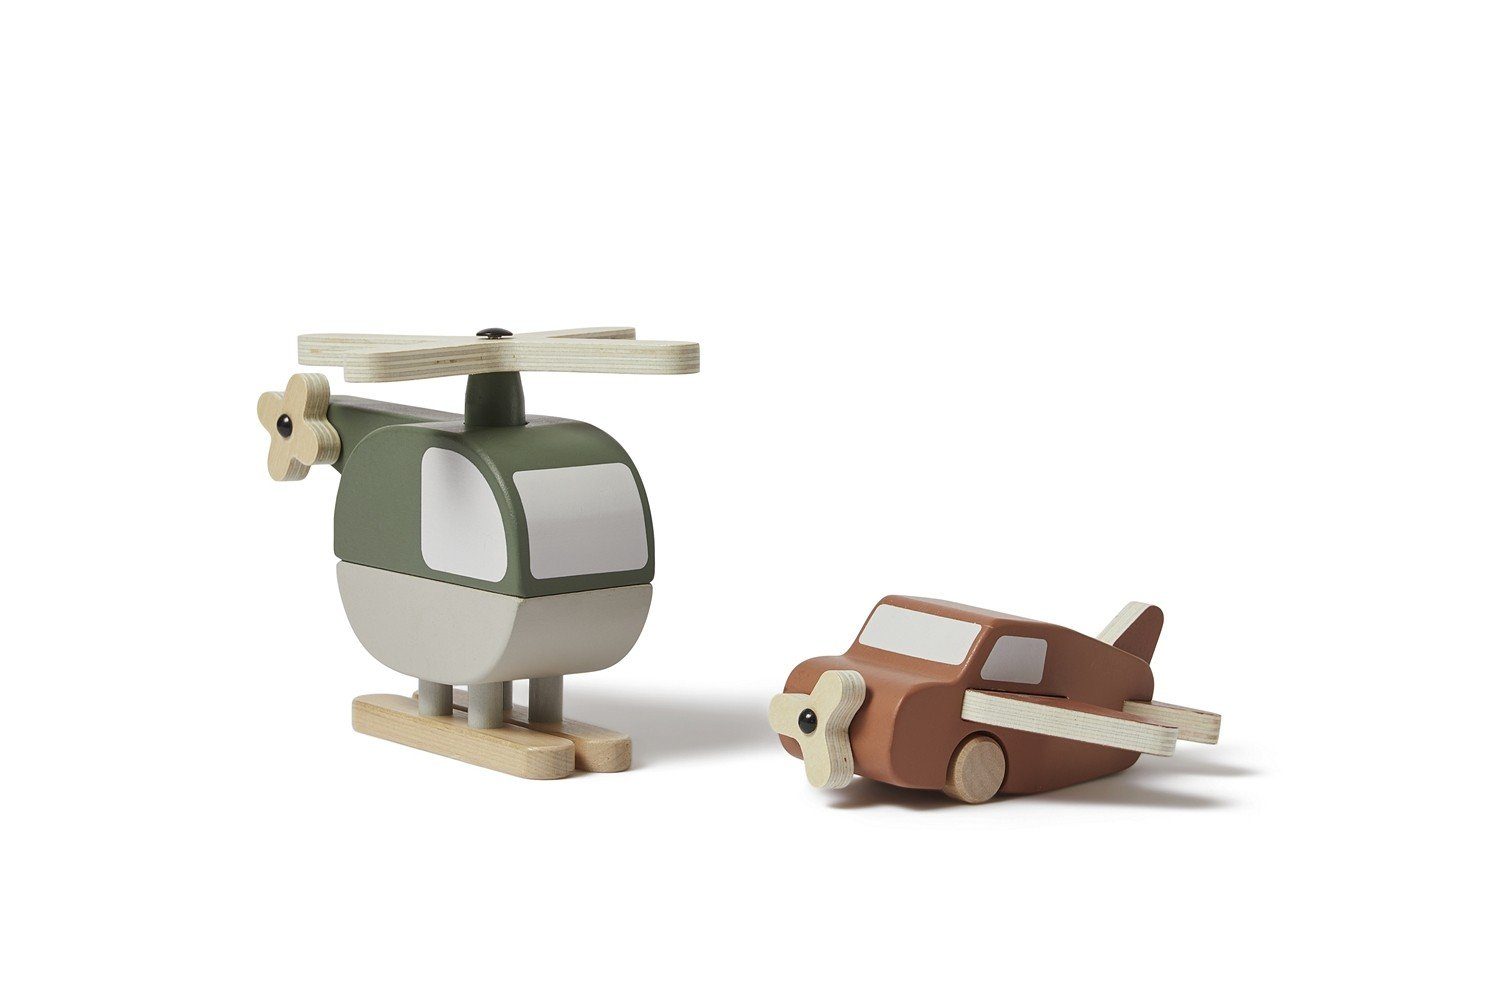 Flexa Spielzeug-Hubschrauber Hubschrauber und Flugzeug aus Holz